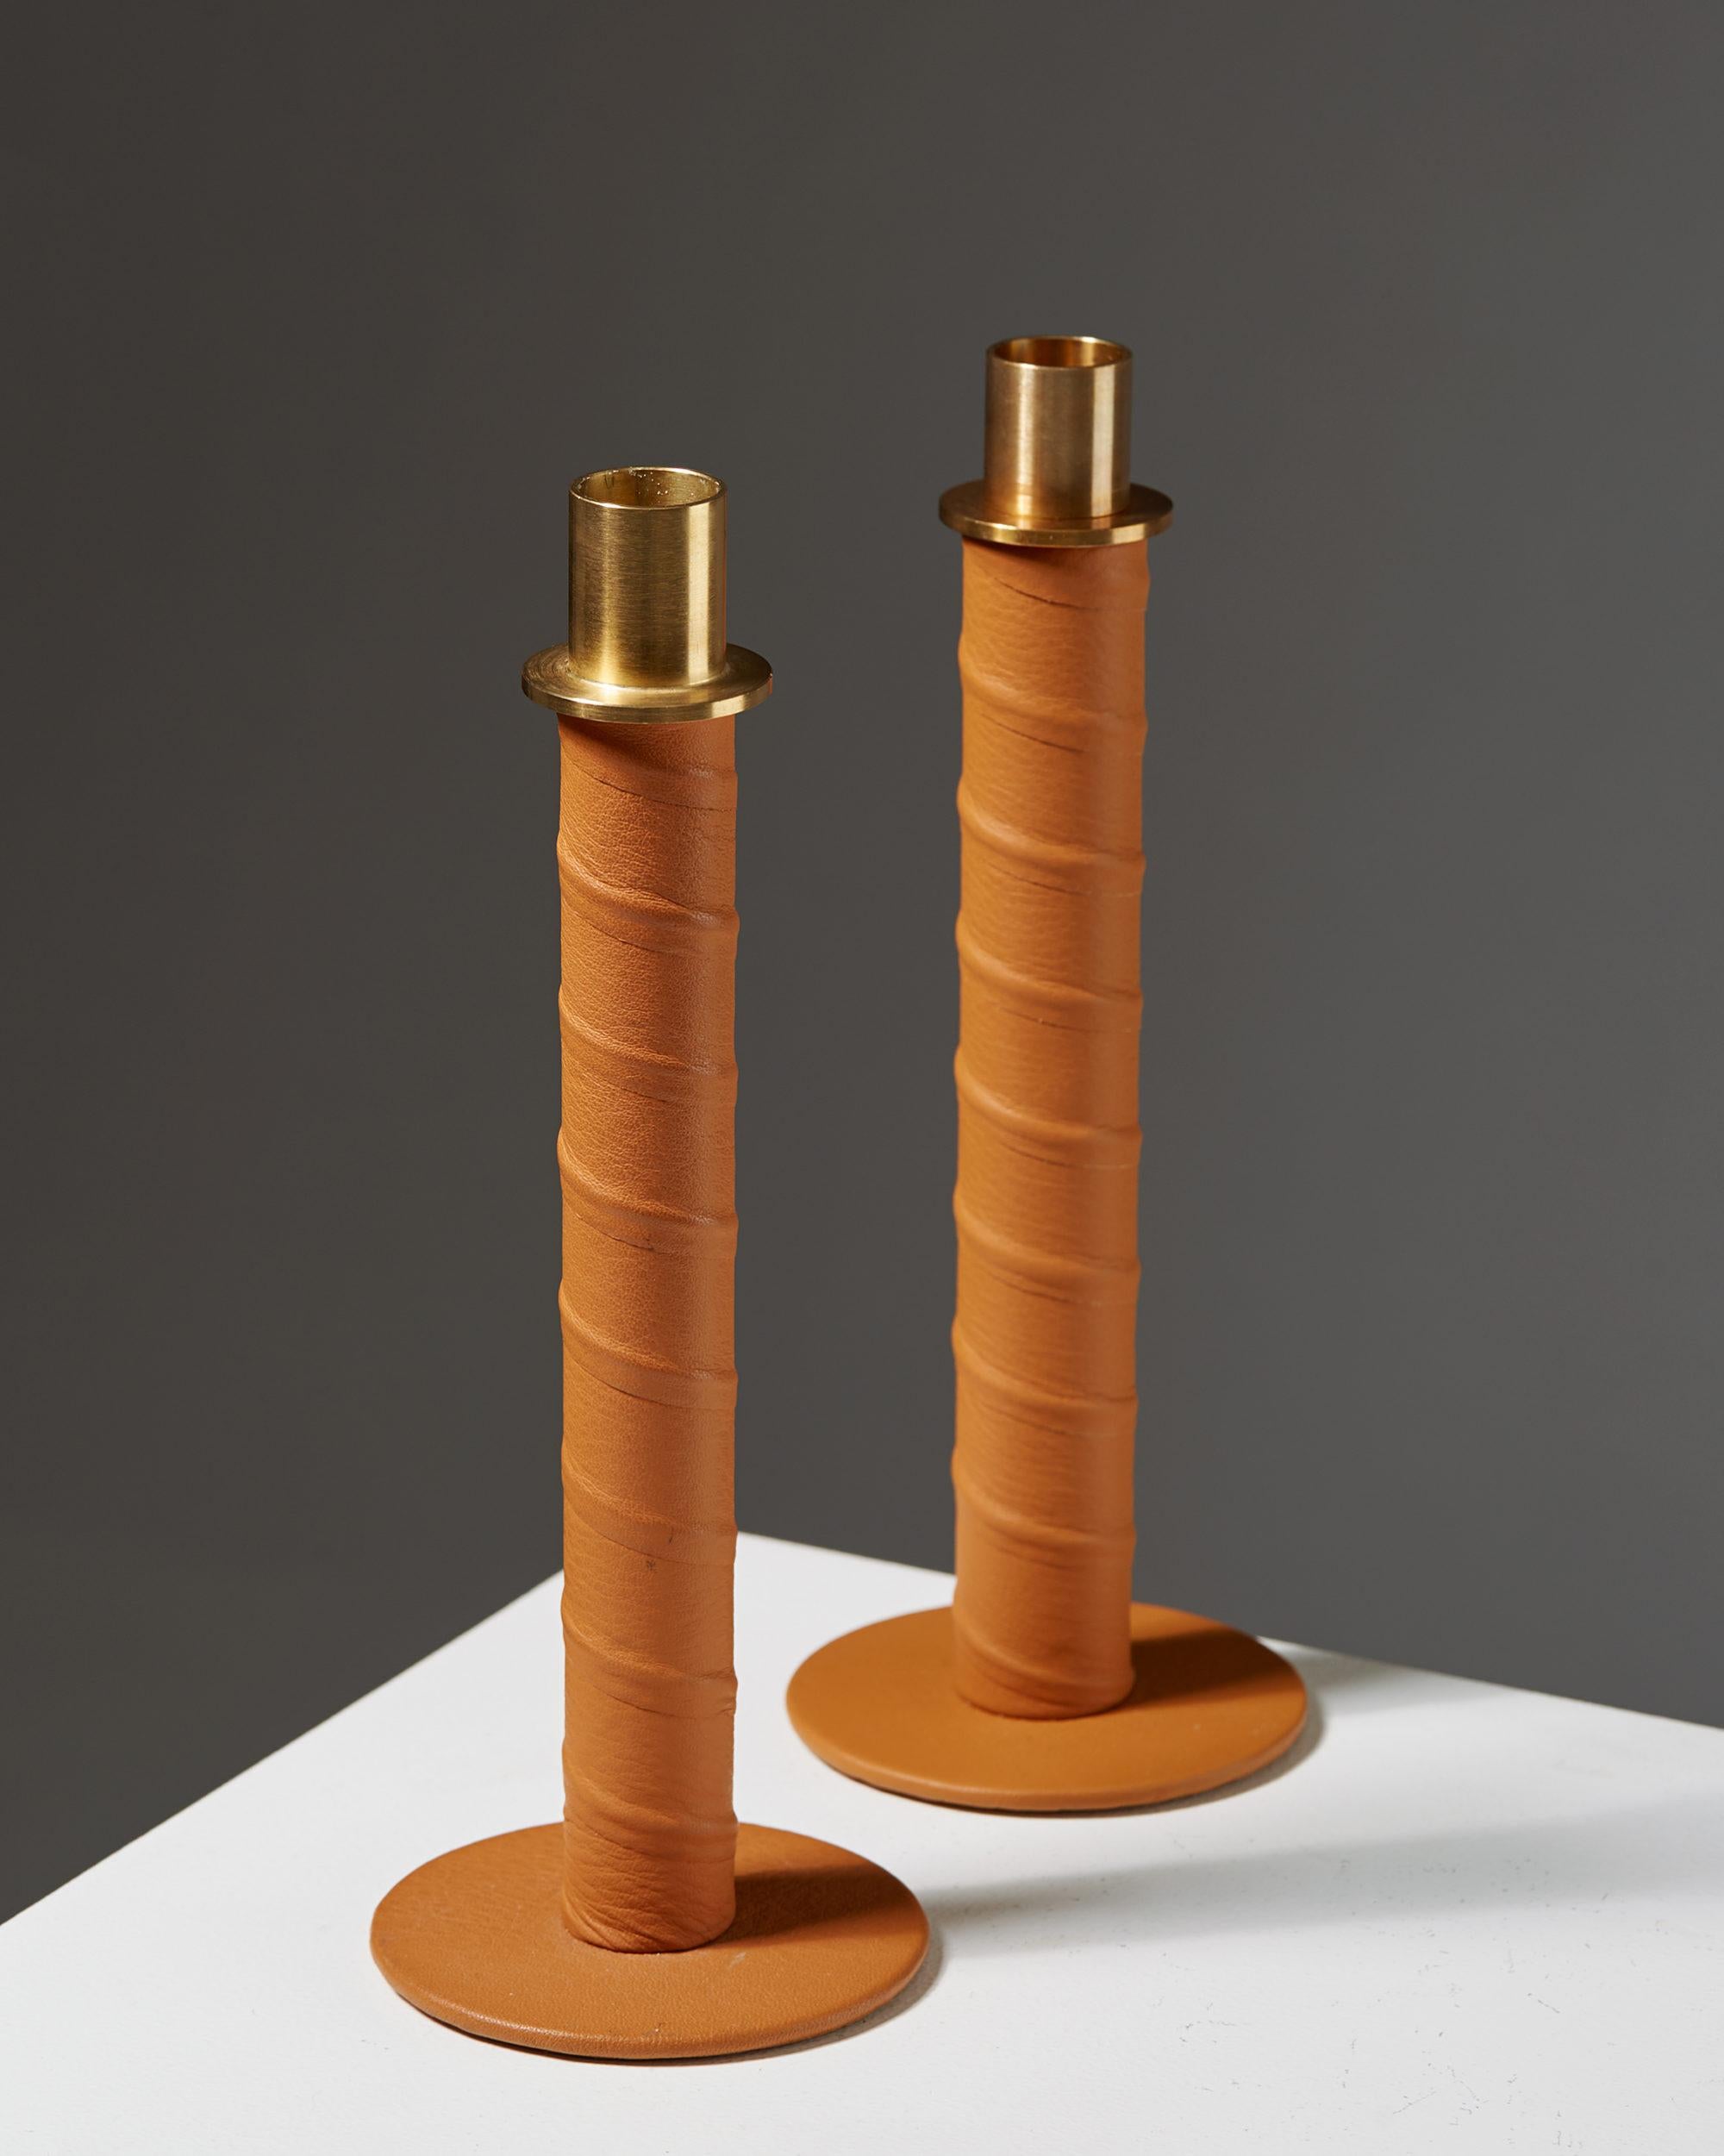 Modern Set of Candlesticks “Herrgård” Designed by Alexander Lervik, Sweden, 2013